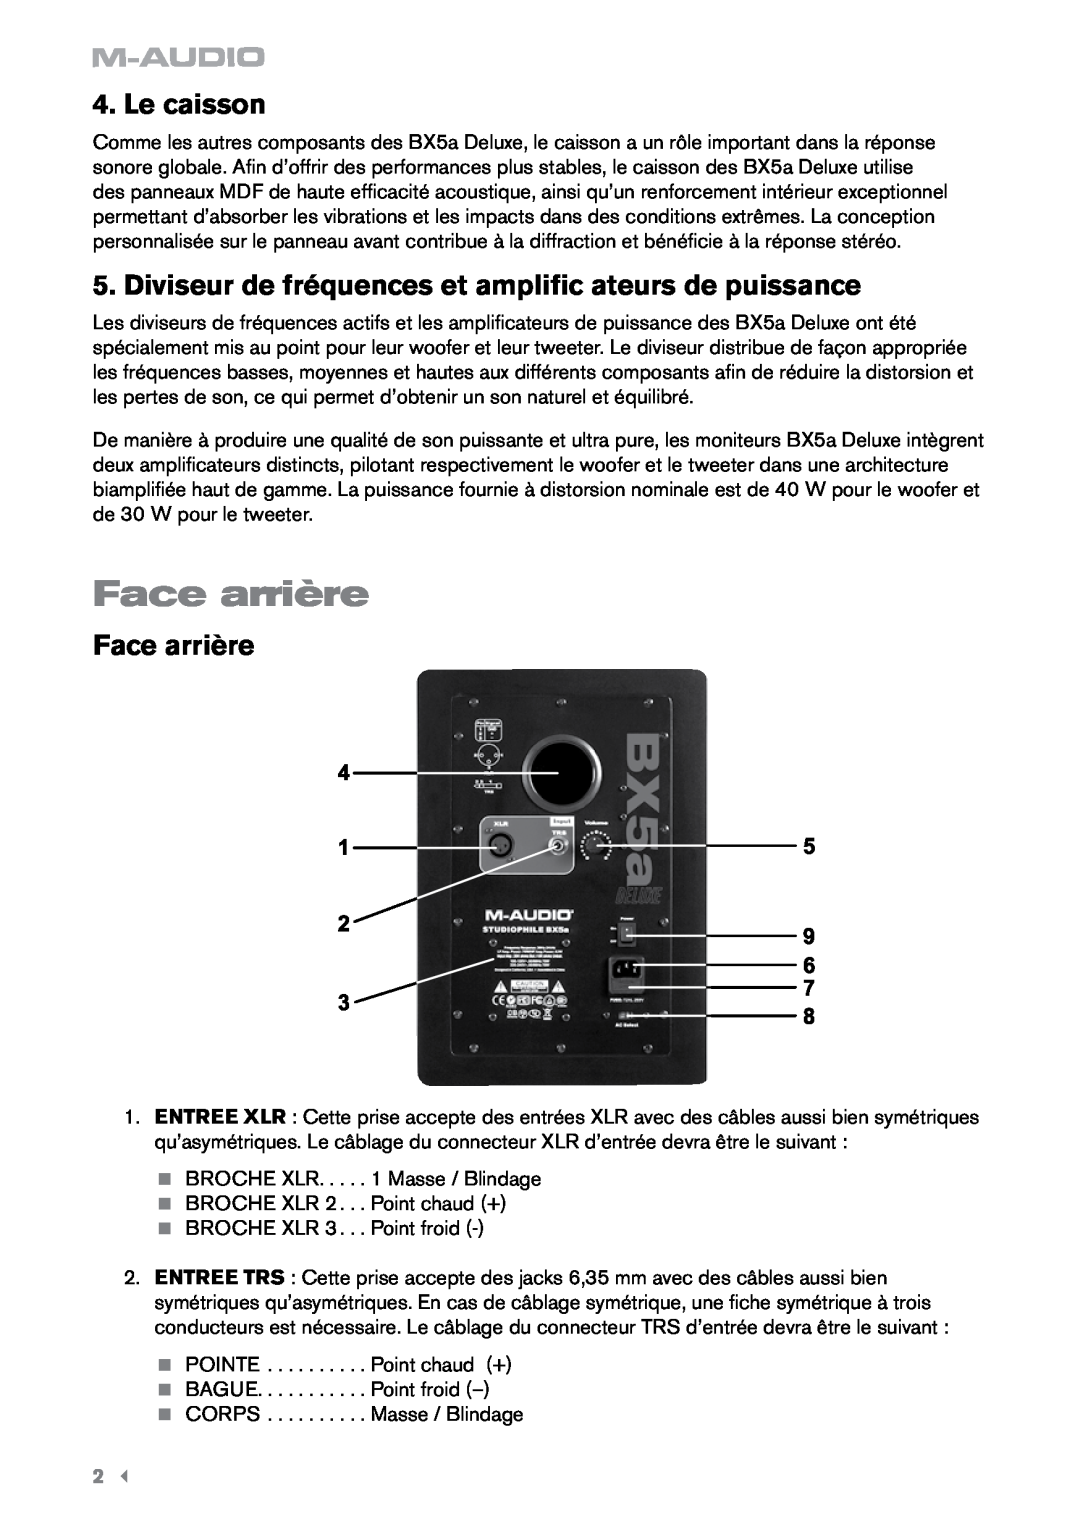 M-Audio BX5a Deluxe manual Face arrière, Le caisson 